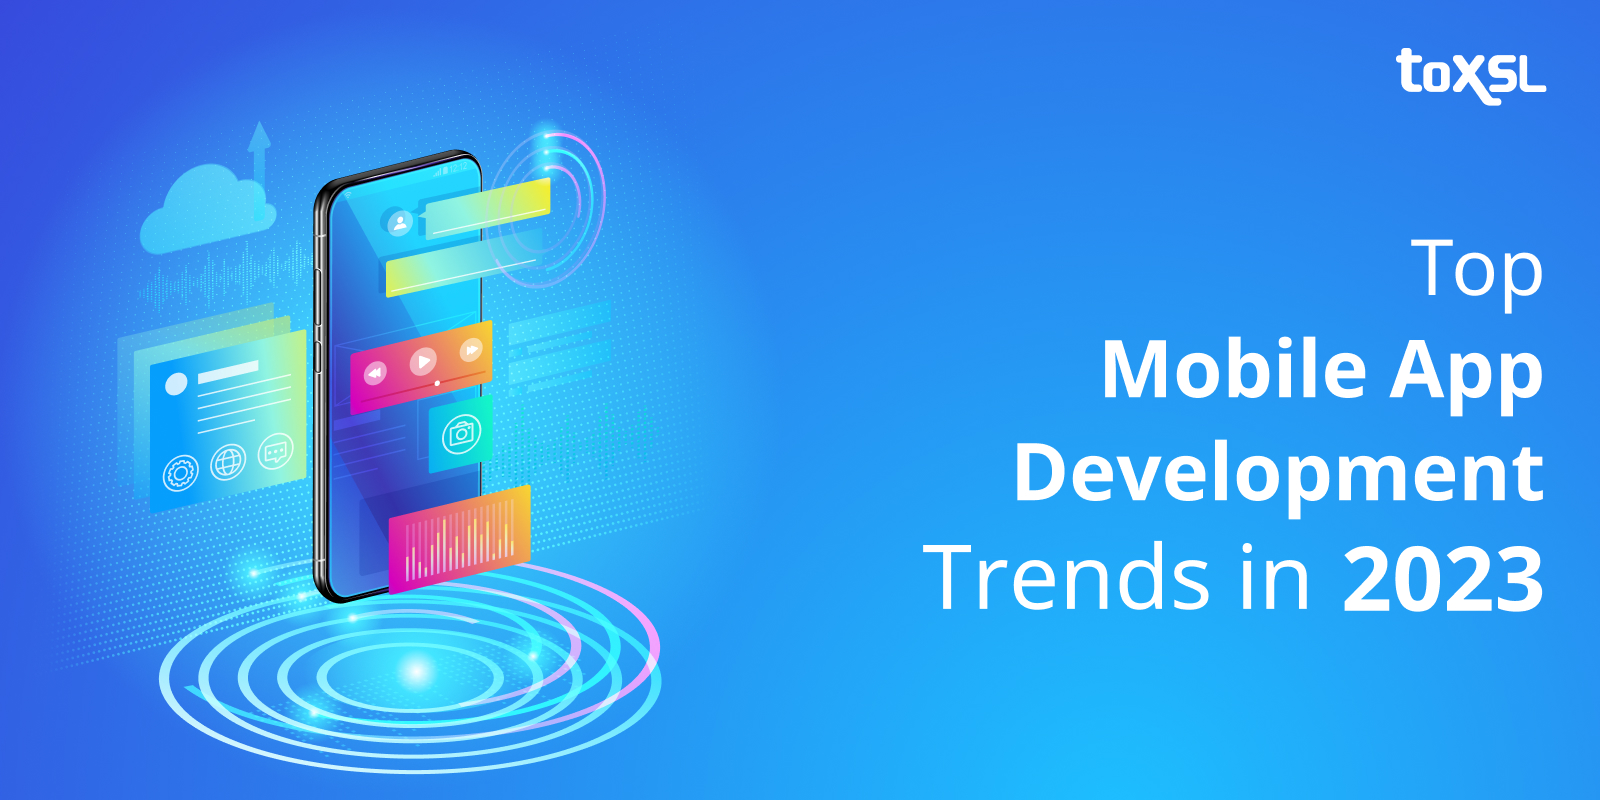 Top Mobile App Development Trends In 2023